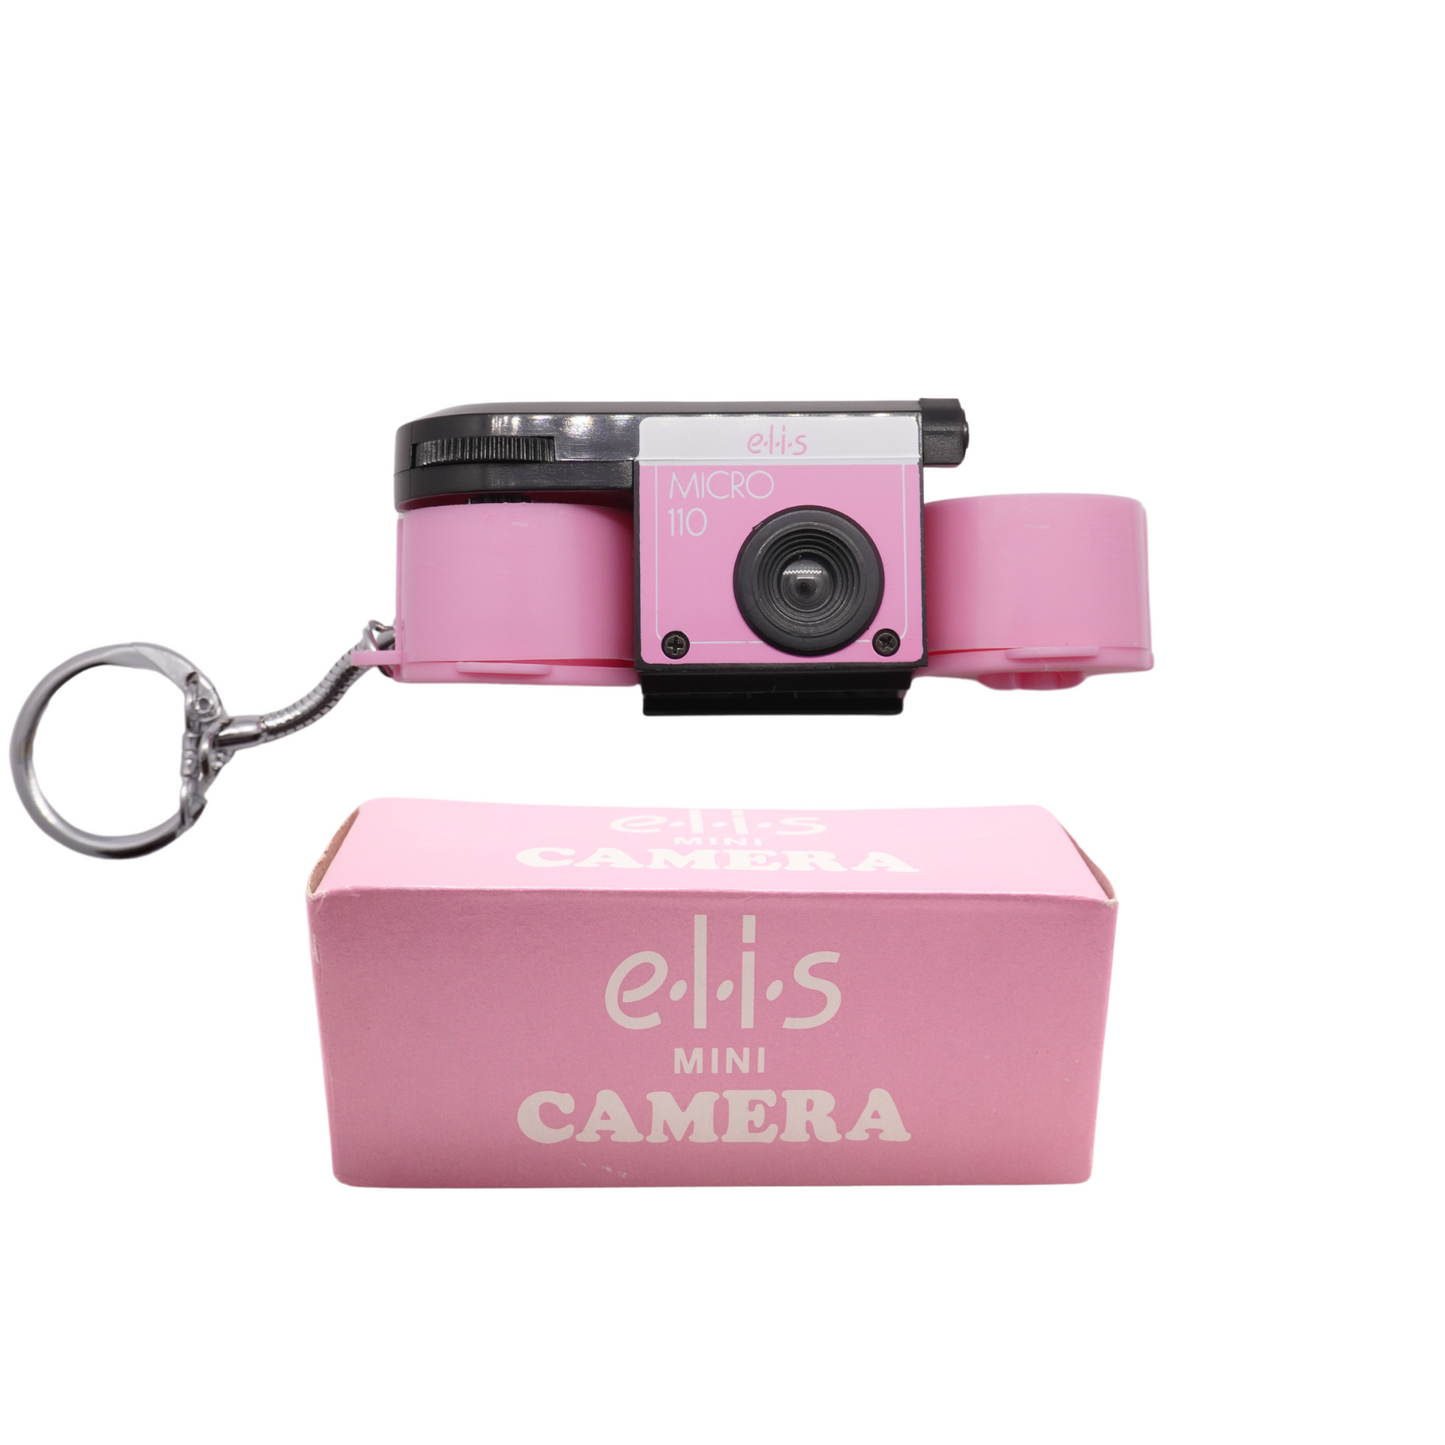 E.L.O.S Micro 110 Film Camera